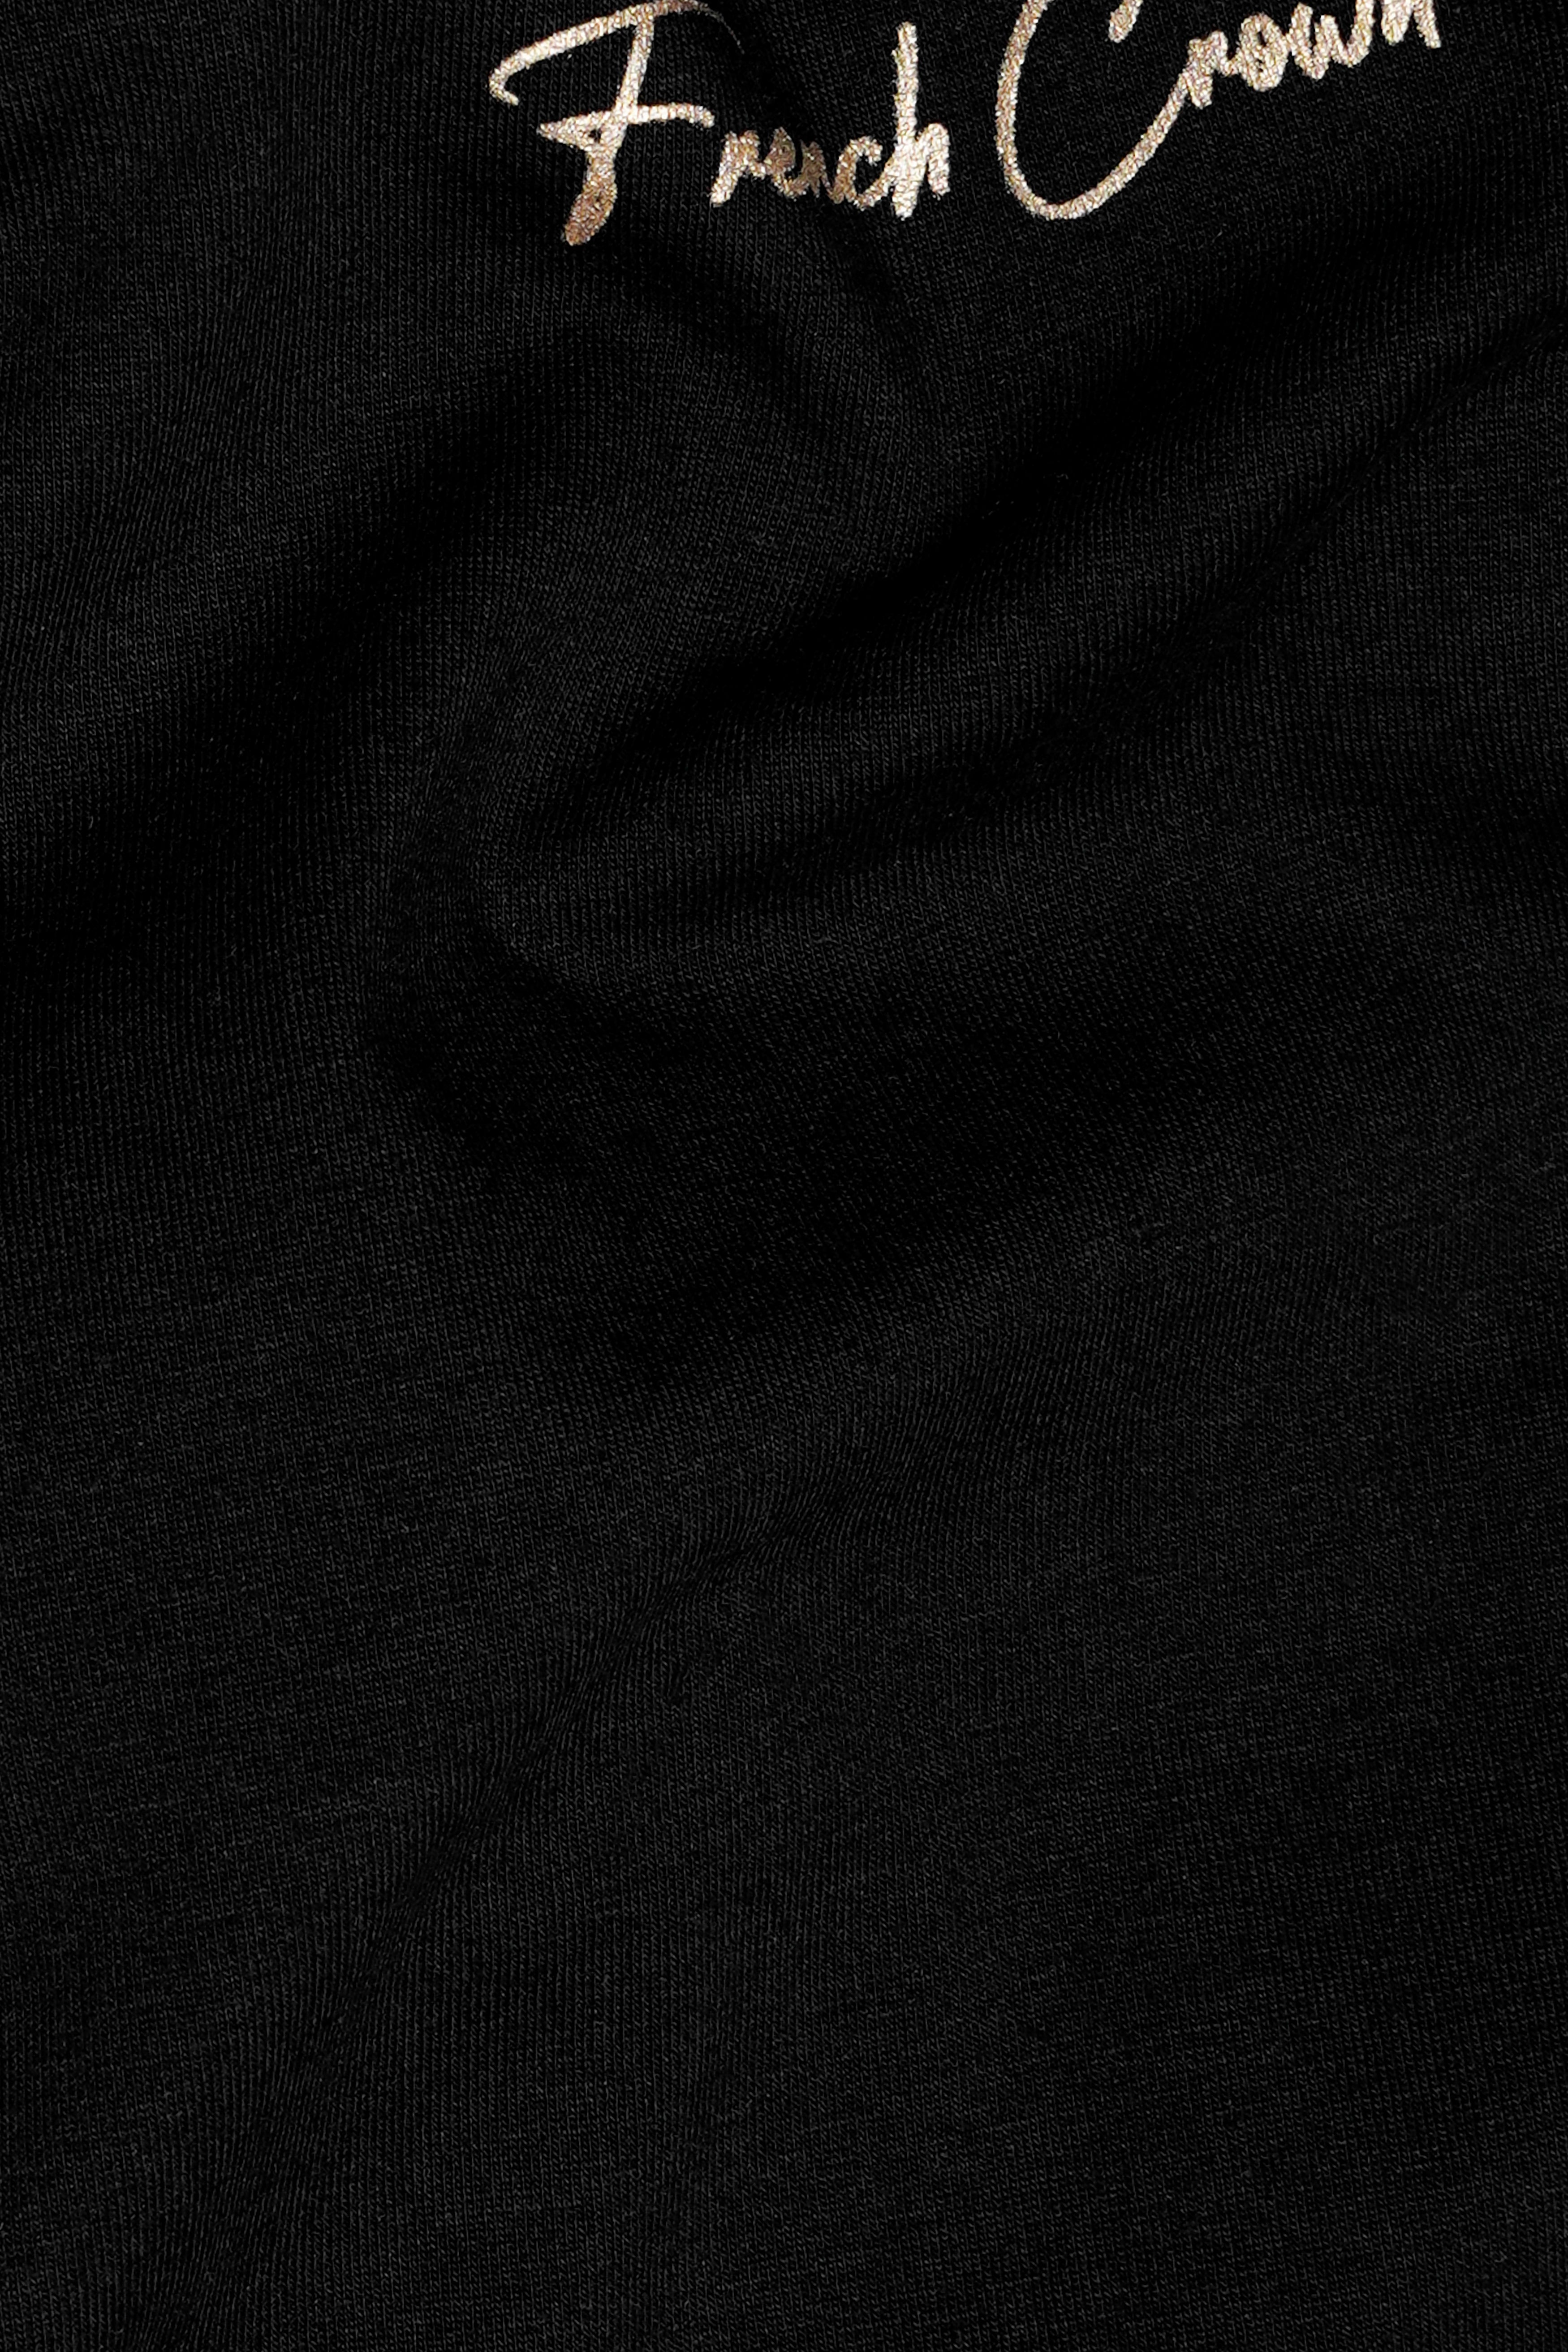 Jade Black Premium Cotton T-Shirt